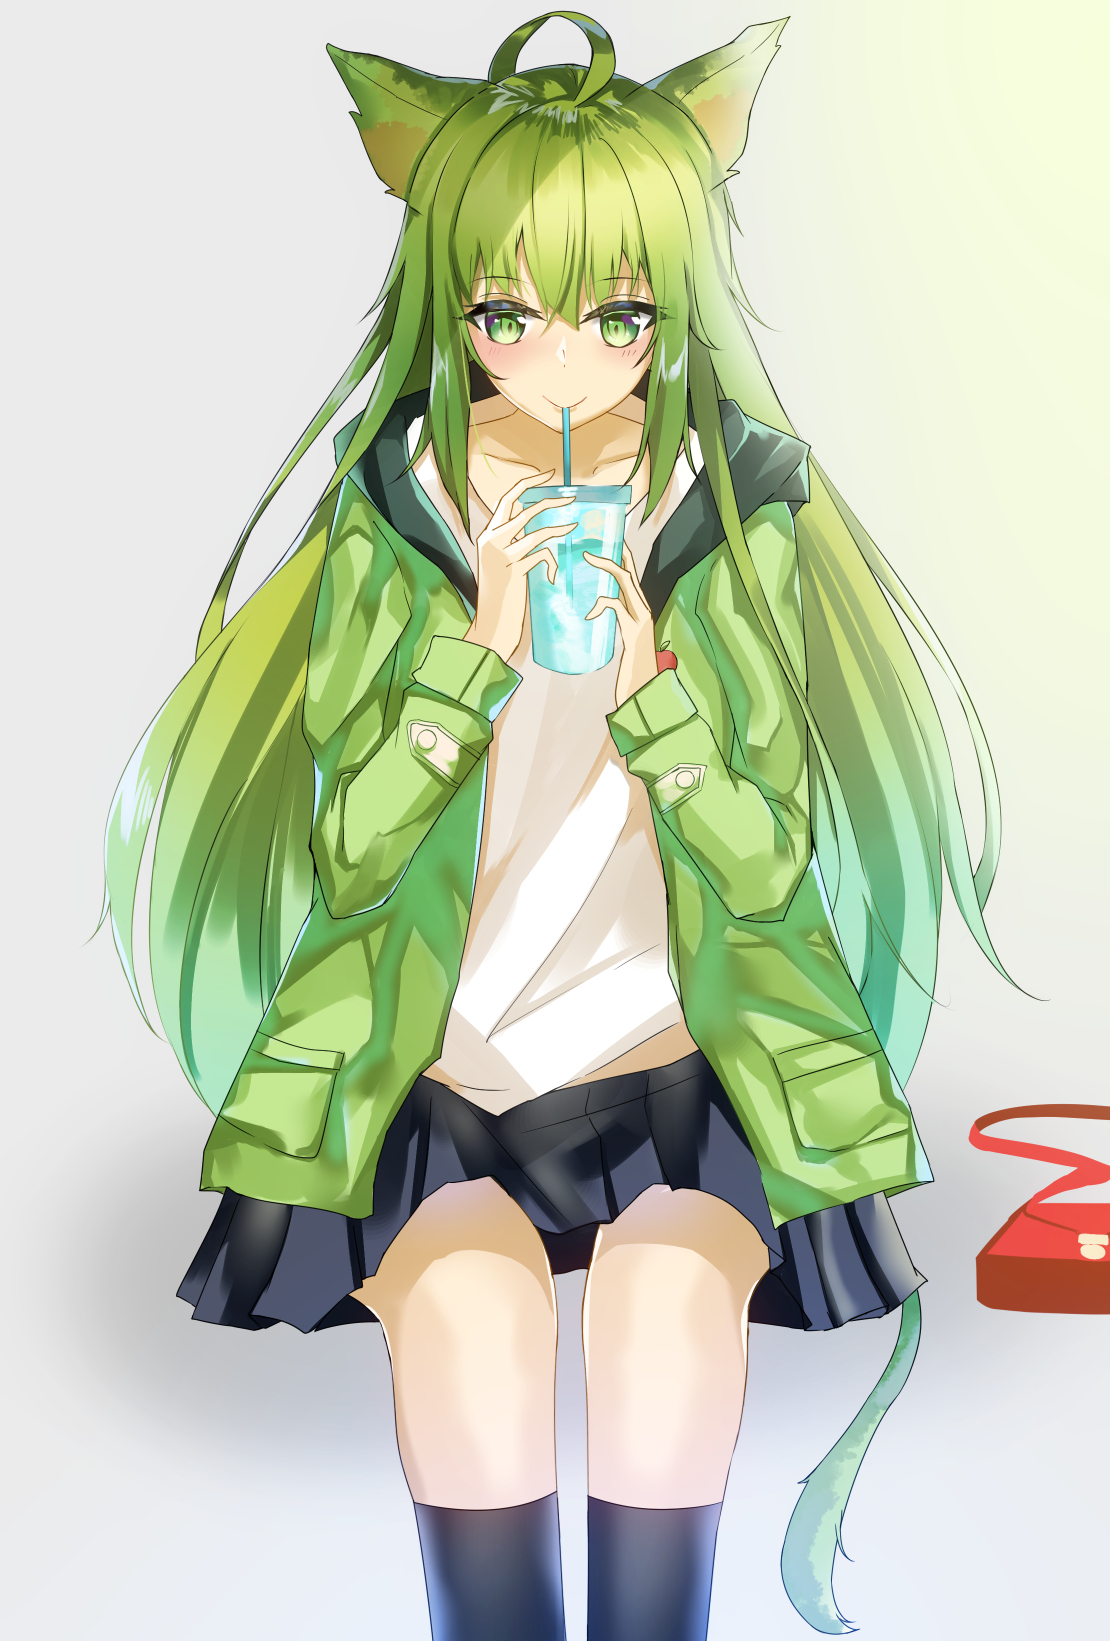 Fate Series FGO Fate Apocrypha Anime Girls 2D Vertical Long Hair Multi Colored Hair Green Hair Looki 1110x1641